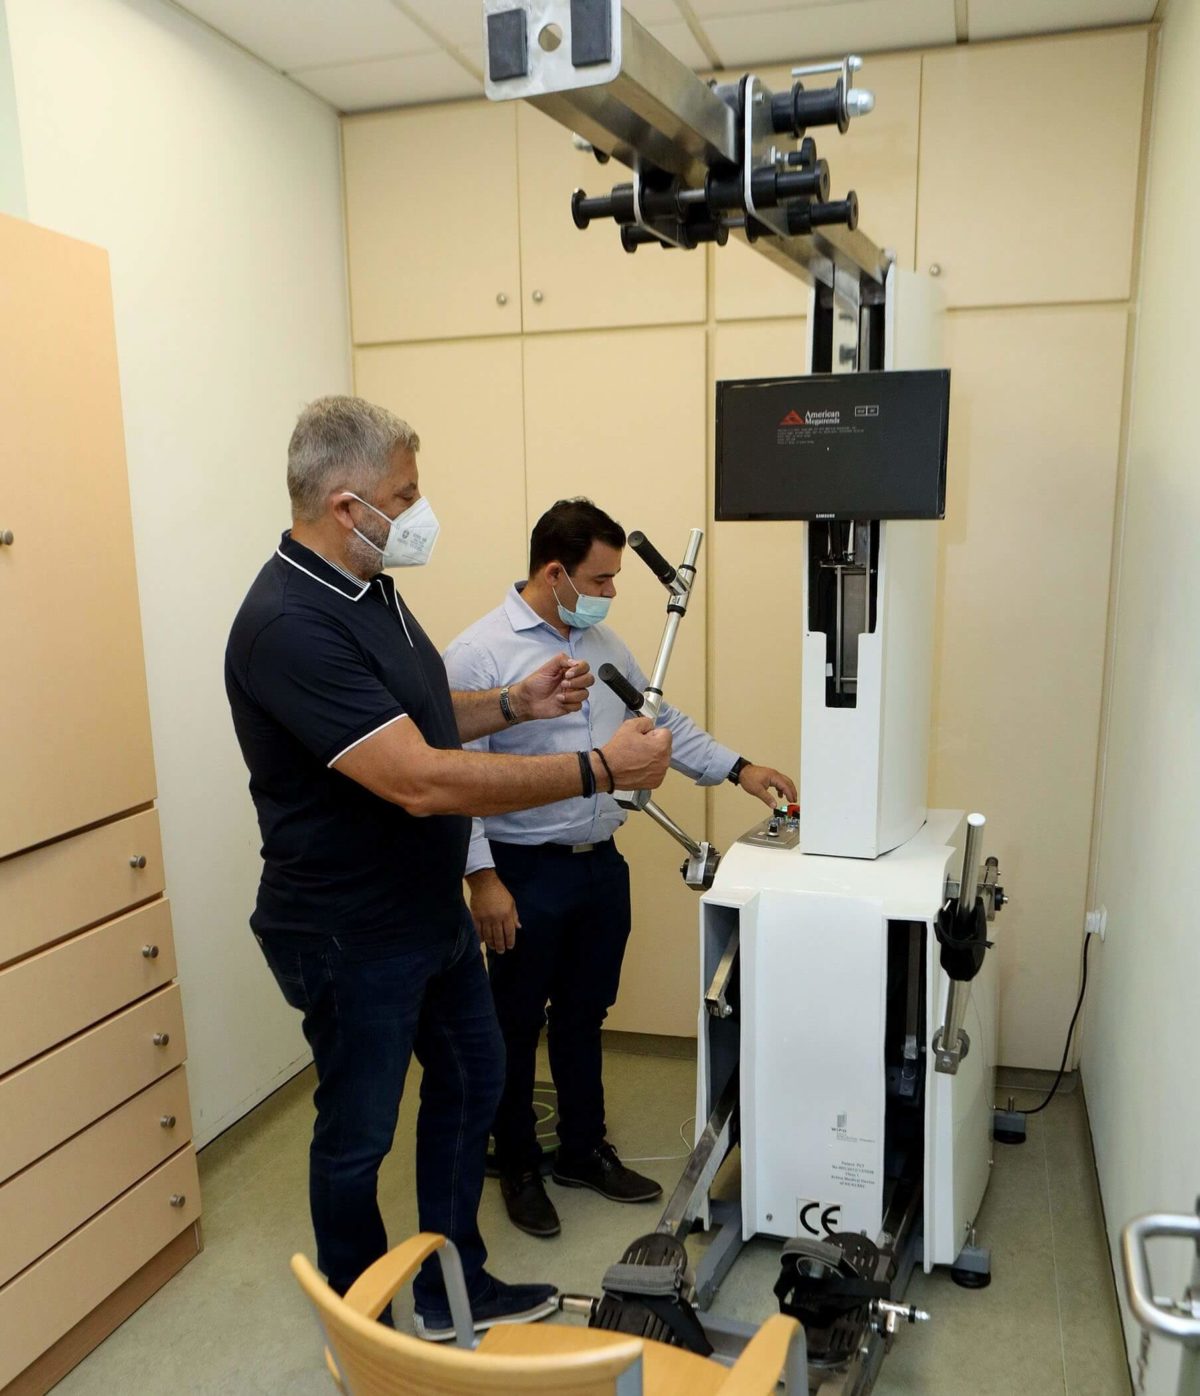 Δωρεά μηχανήματος κινησιοθεραπείας και αποκατάστασης από την Περιφέρεια Αττικής στο Γηροκομείο Πειραιώς